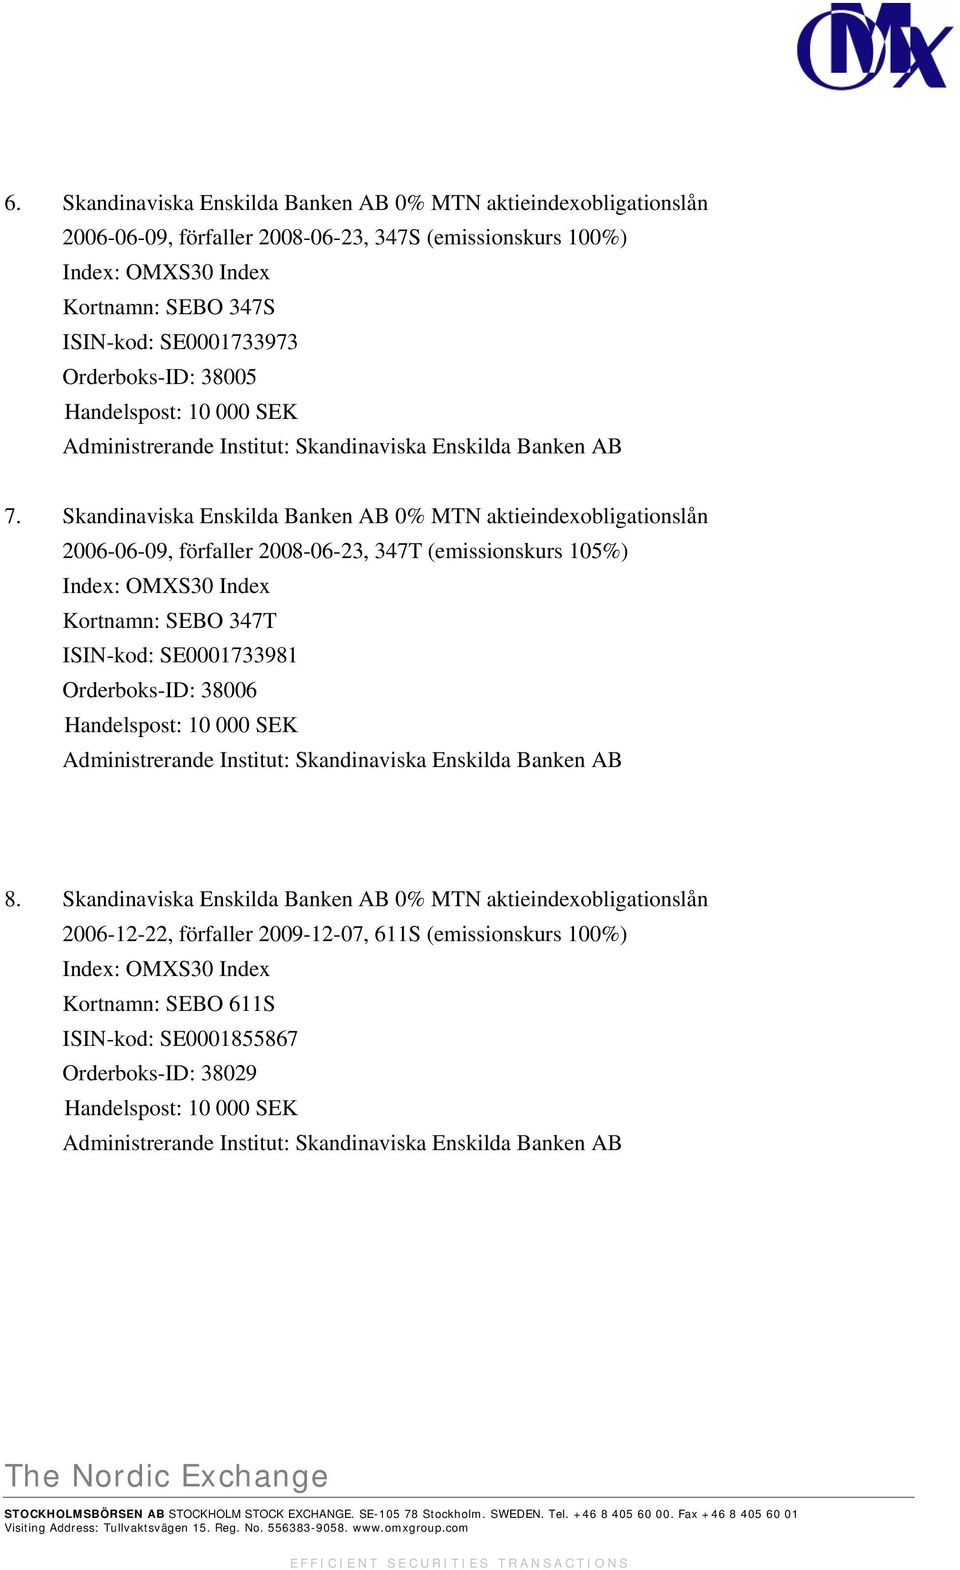 Skandinaviska Enskilda Banken AB 0% MTN aktieindexobligationslån 2006-06-09, förfaller 2008-06-23, 347T (emissionskurs 105%) Index: OMXS30 Index Kortnamn: